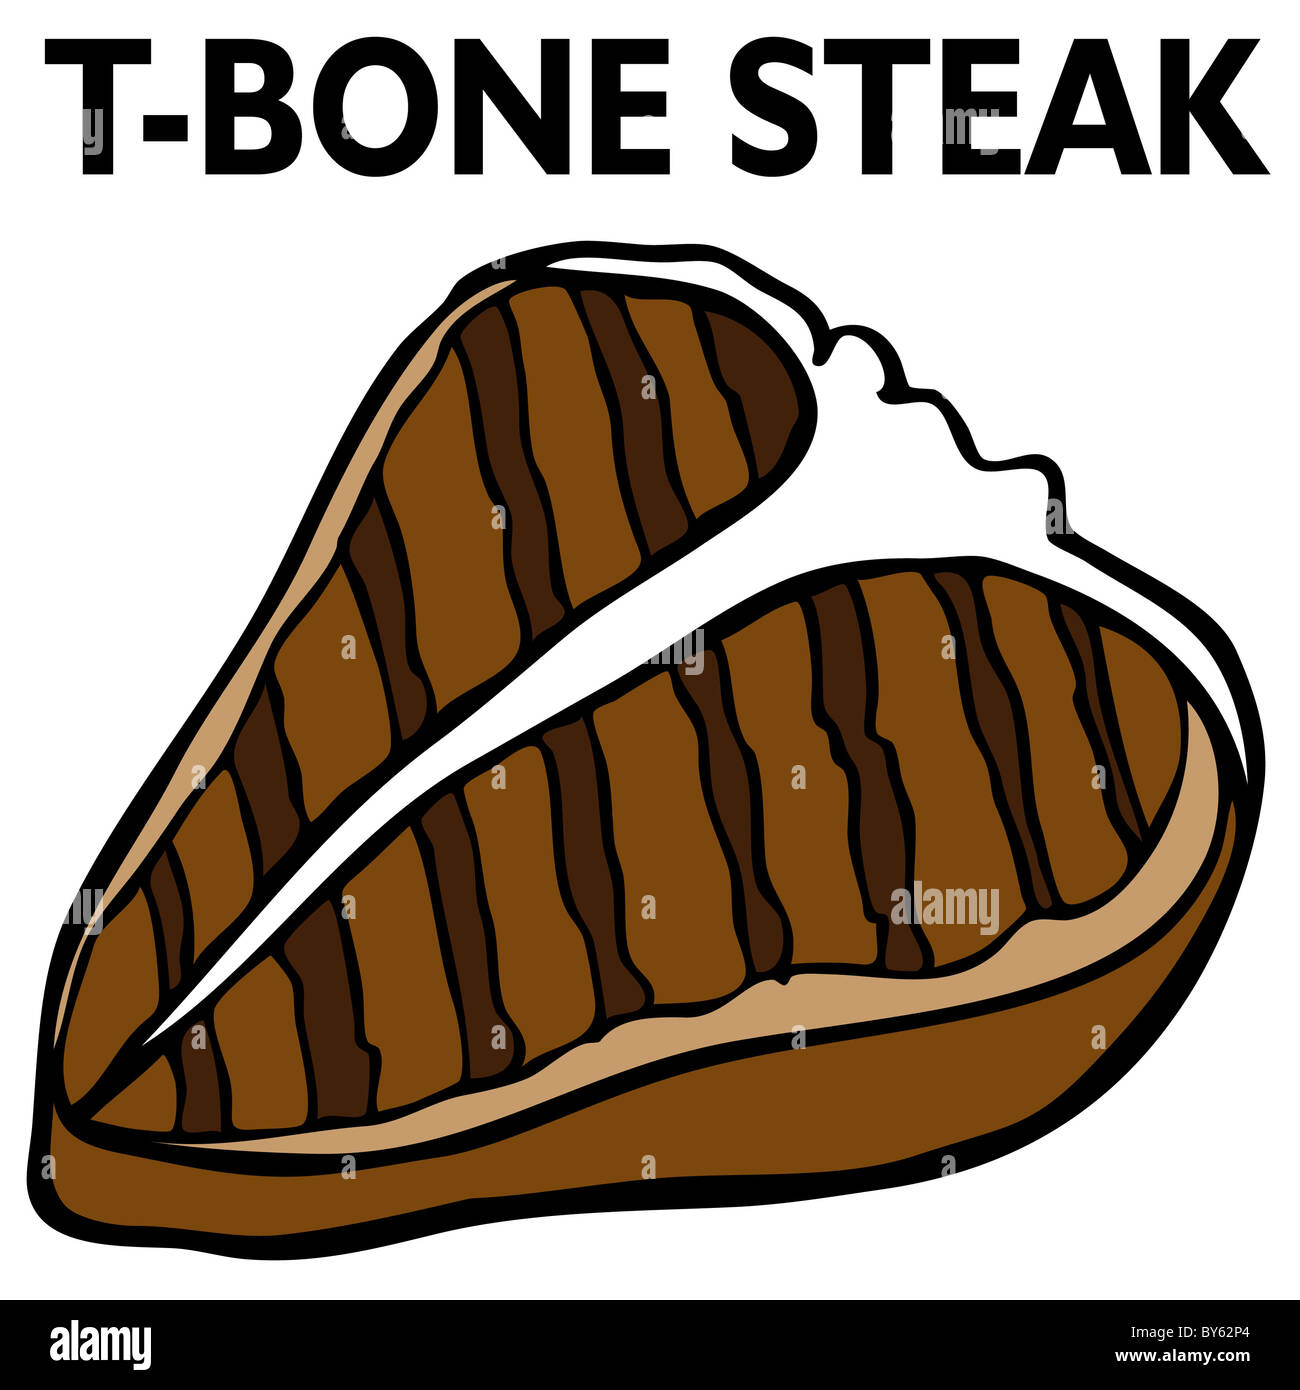 T Bone Steak vector